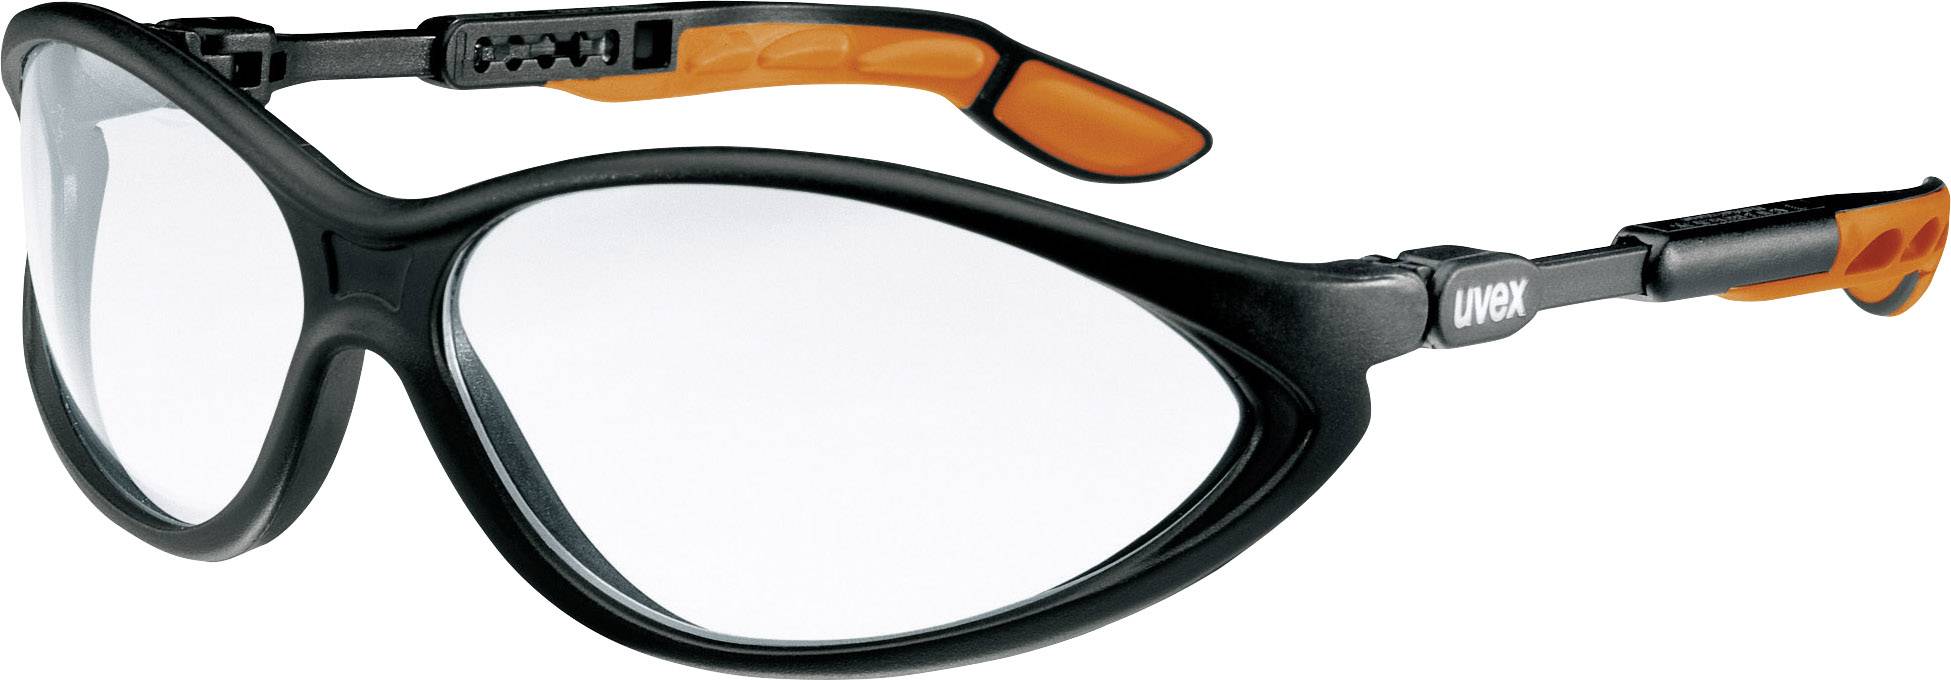 UVEX 9188175 Schutzbrille/Sicherheitsbrille Orange - Schwarz (9188175)